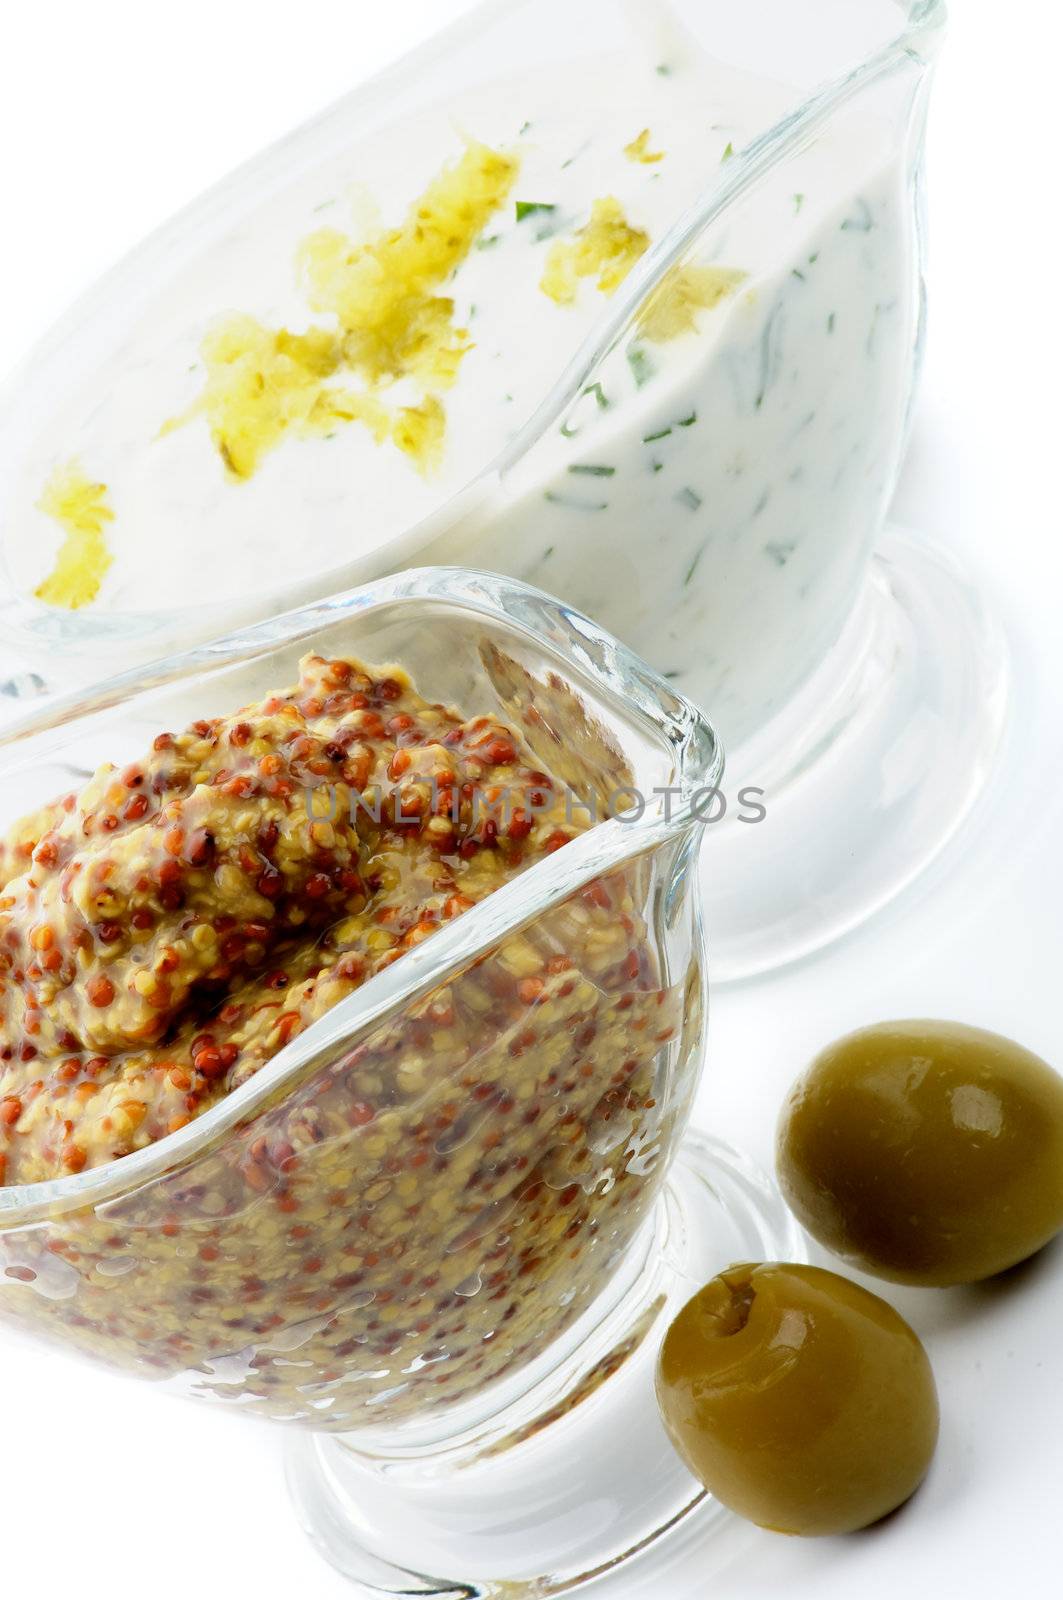 Whole Grain Mustard and Tartar Sauce by zhekos